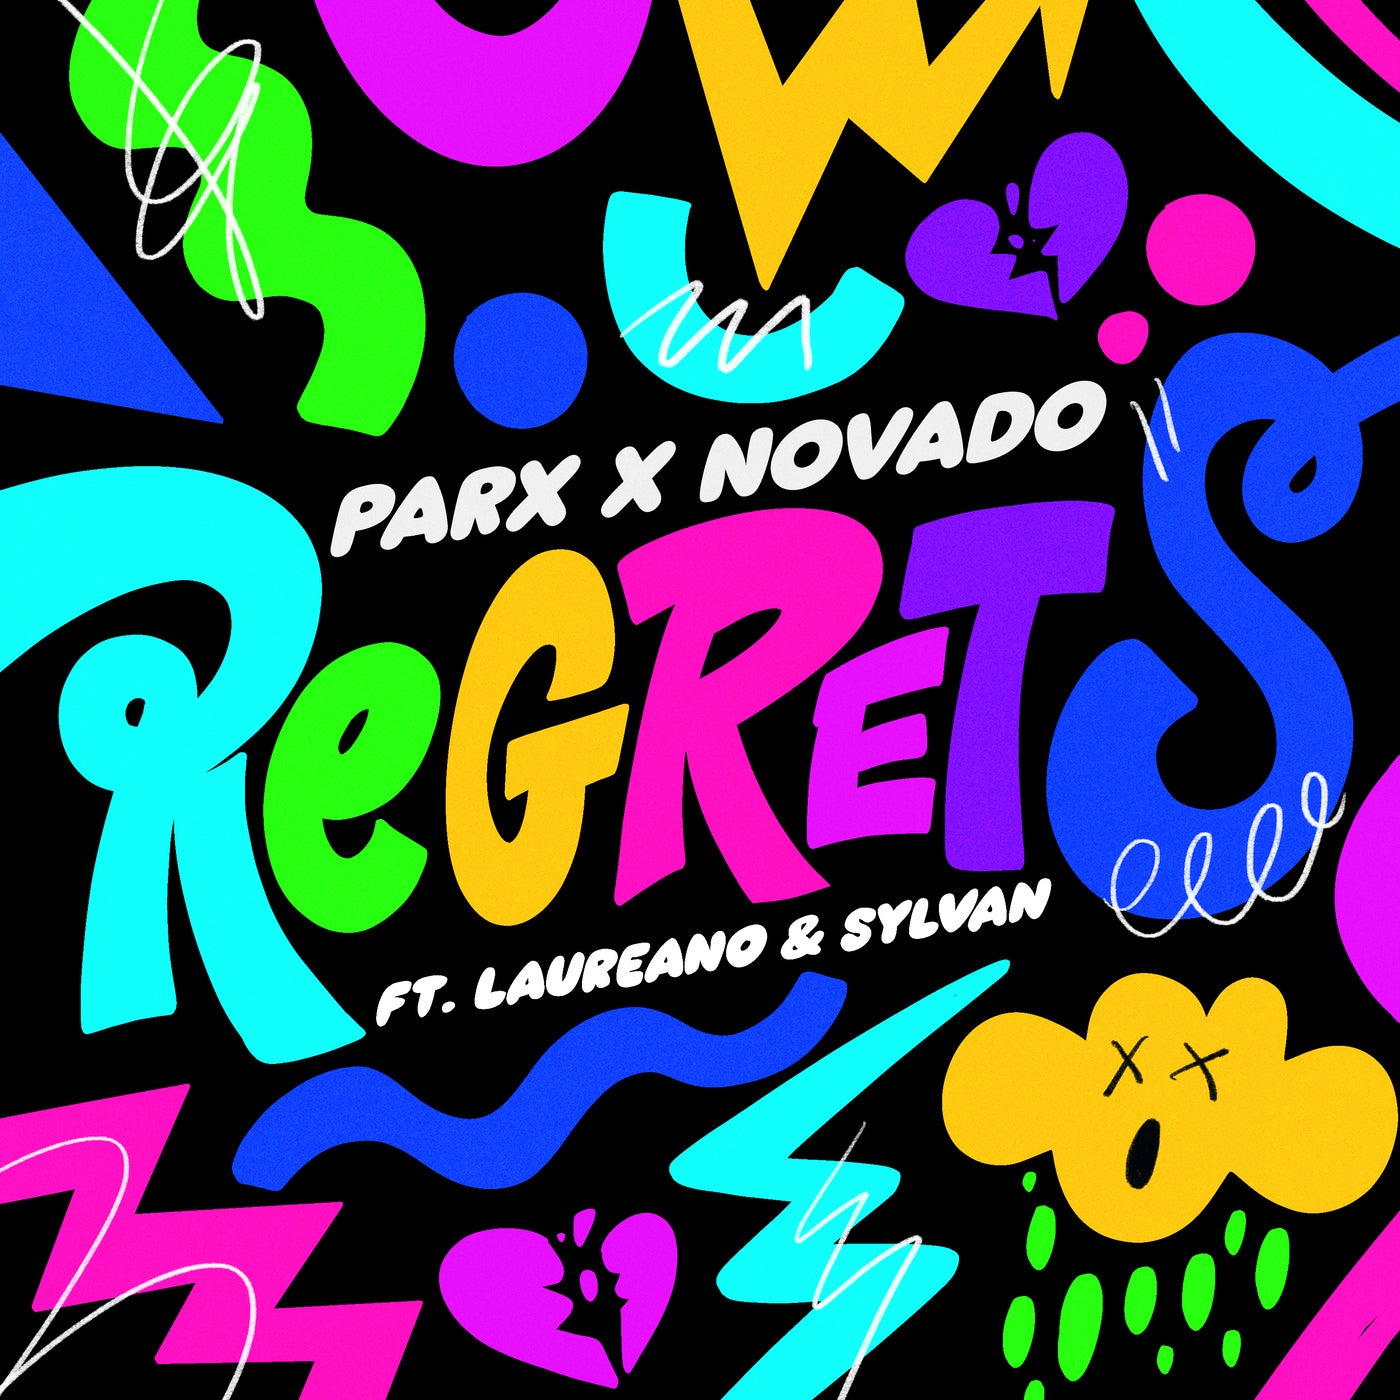 Regrets (feat. Laureano & Sylvan)